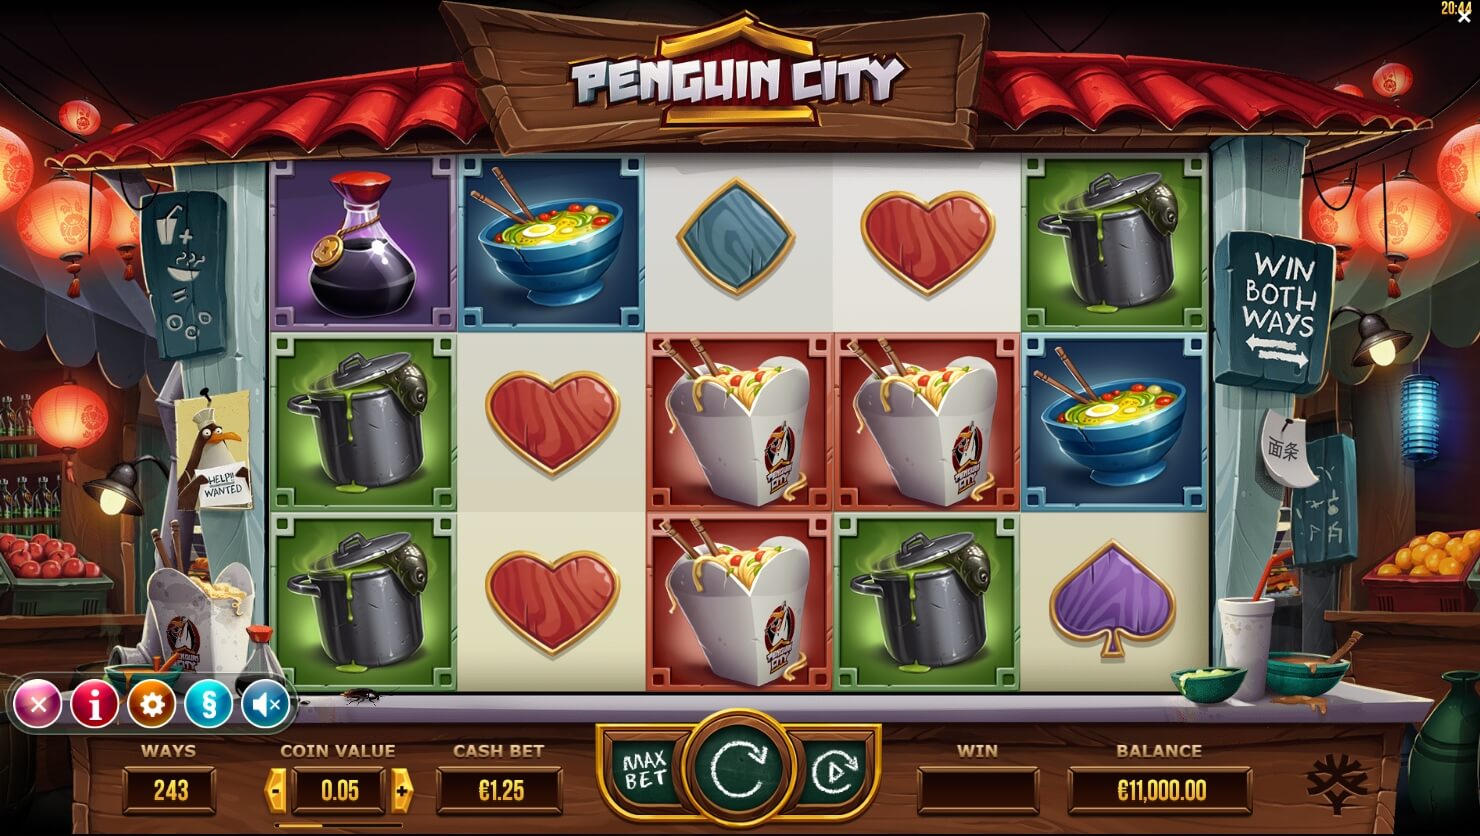 Penguin City Yggdrasil joker slot